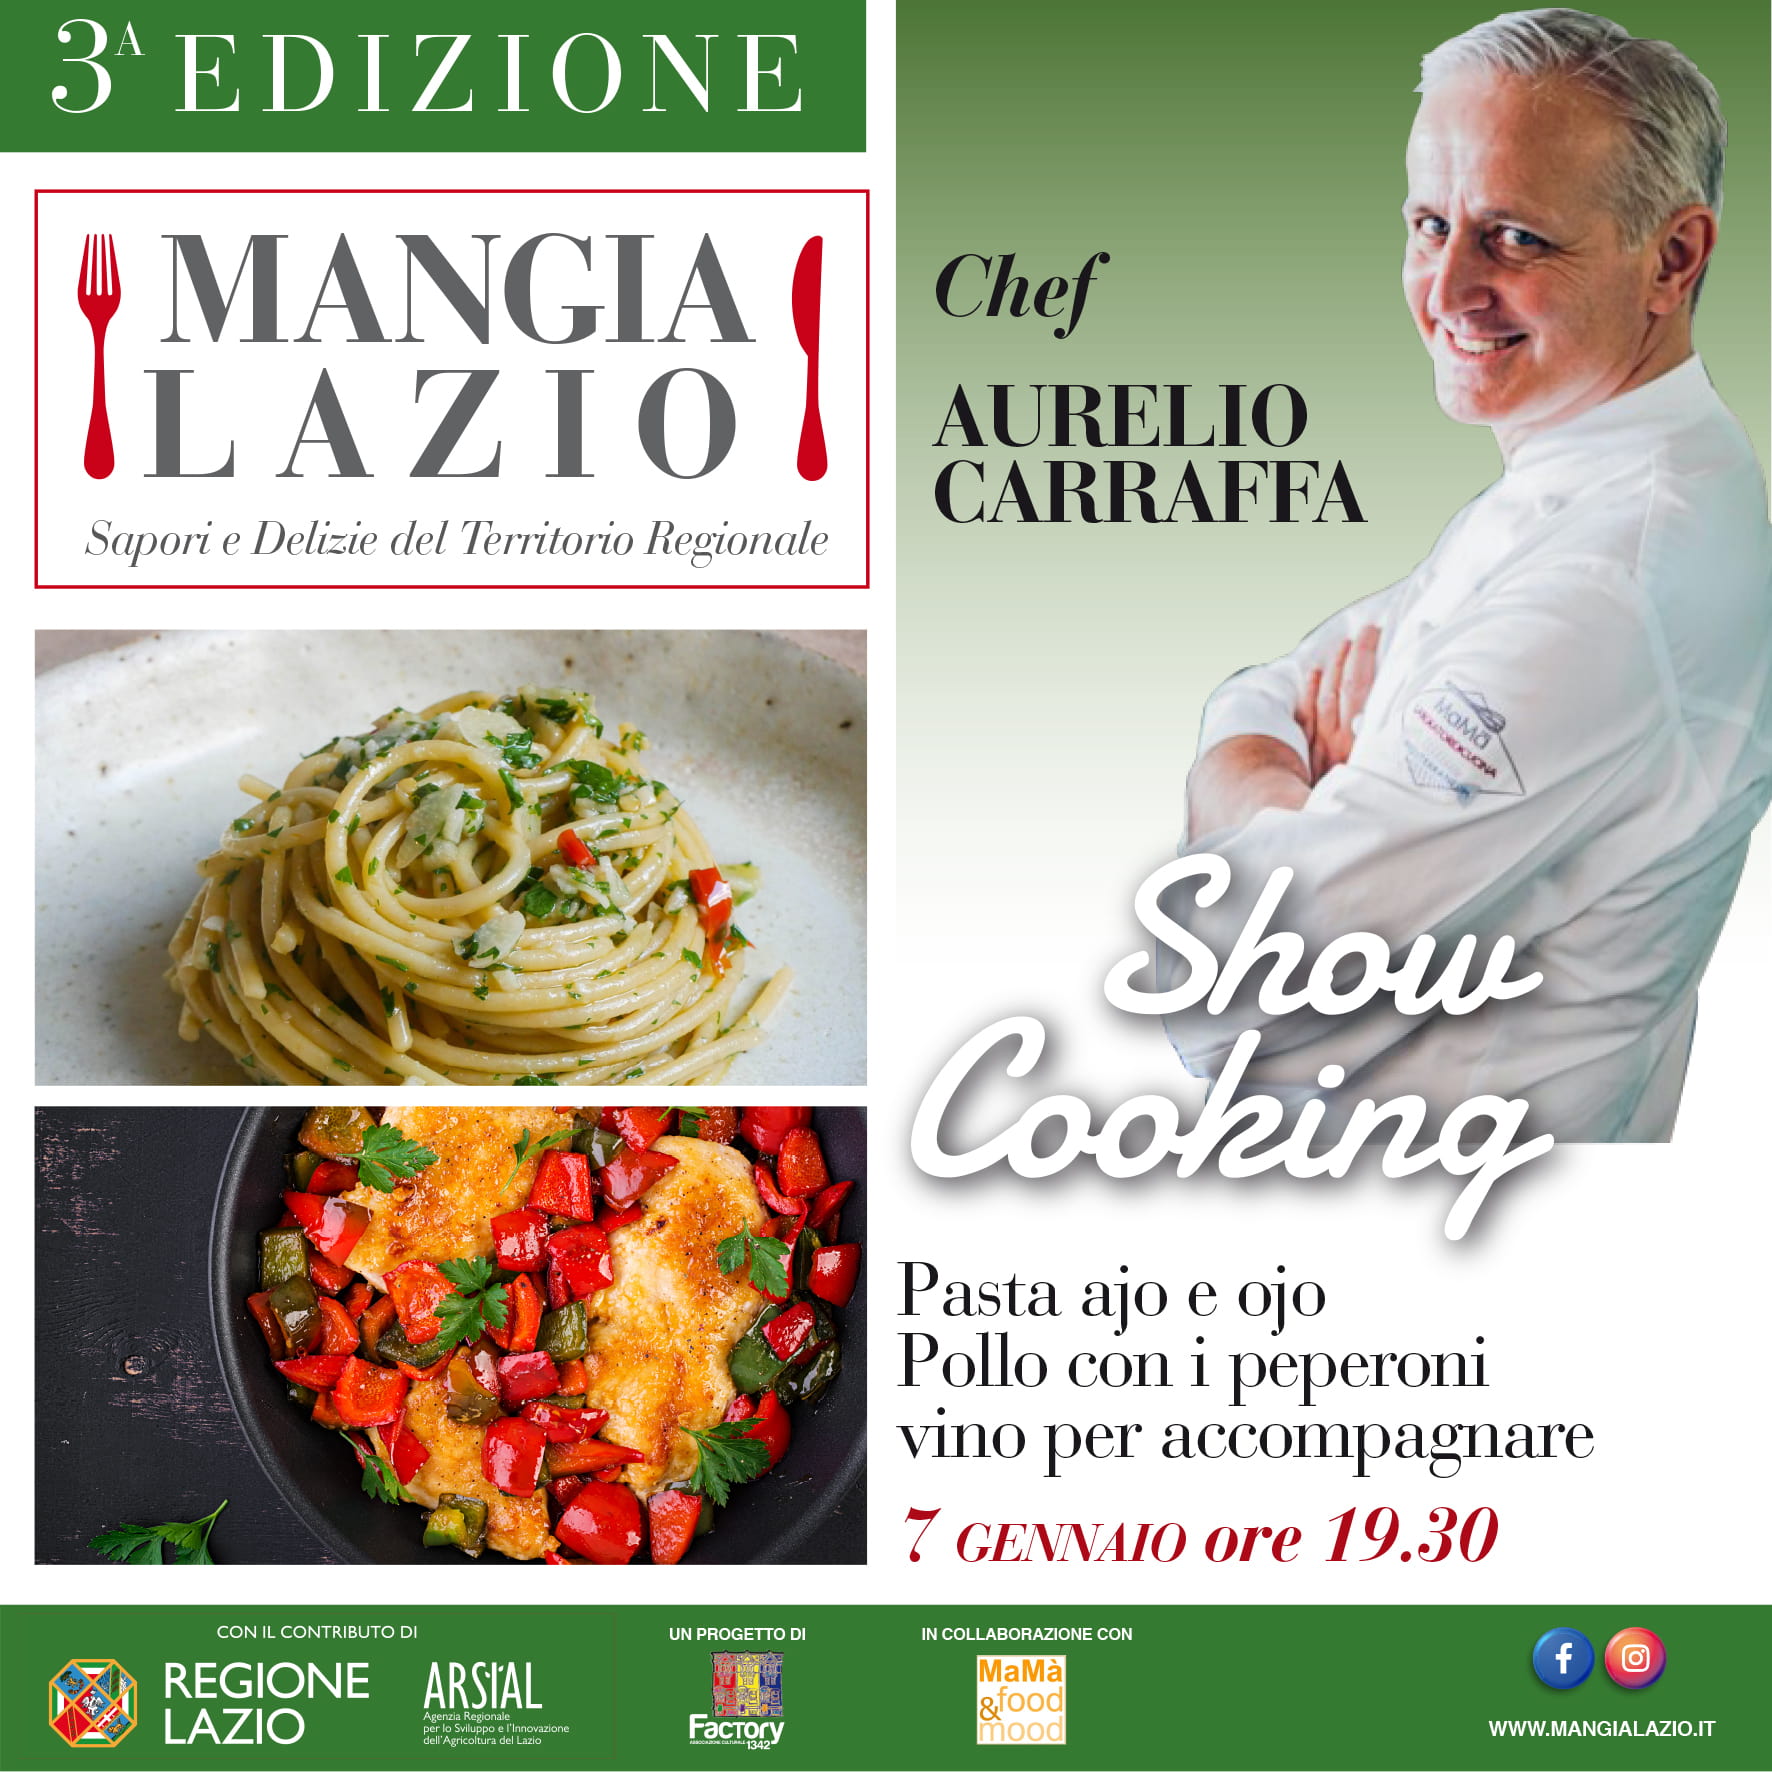 mangialazio show cooking generico